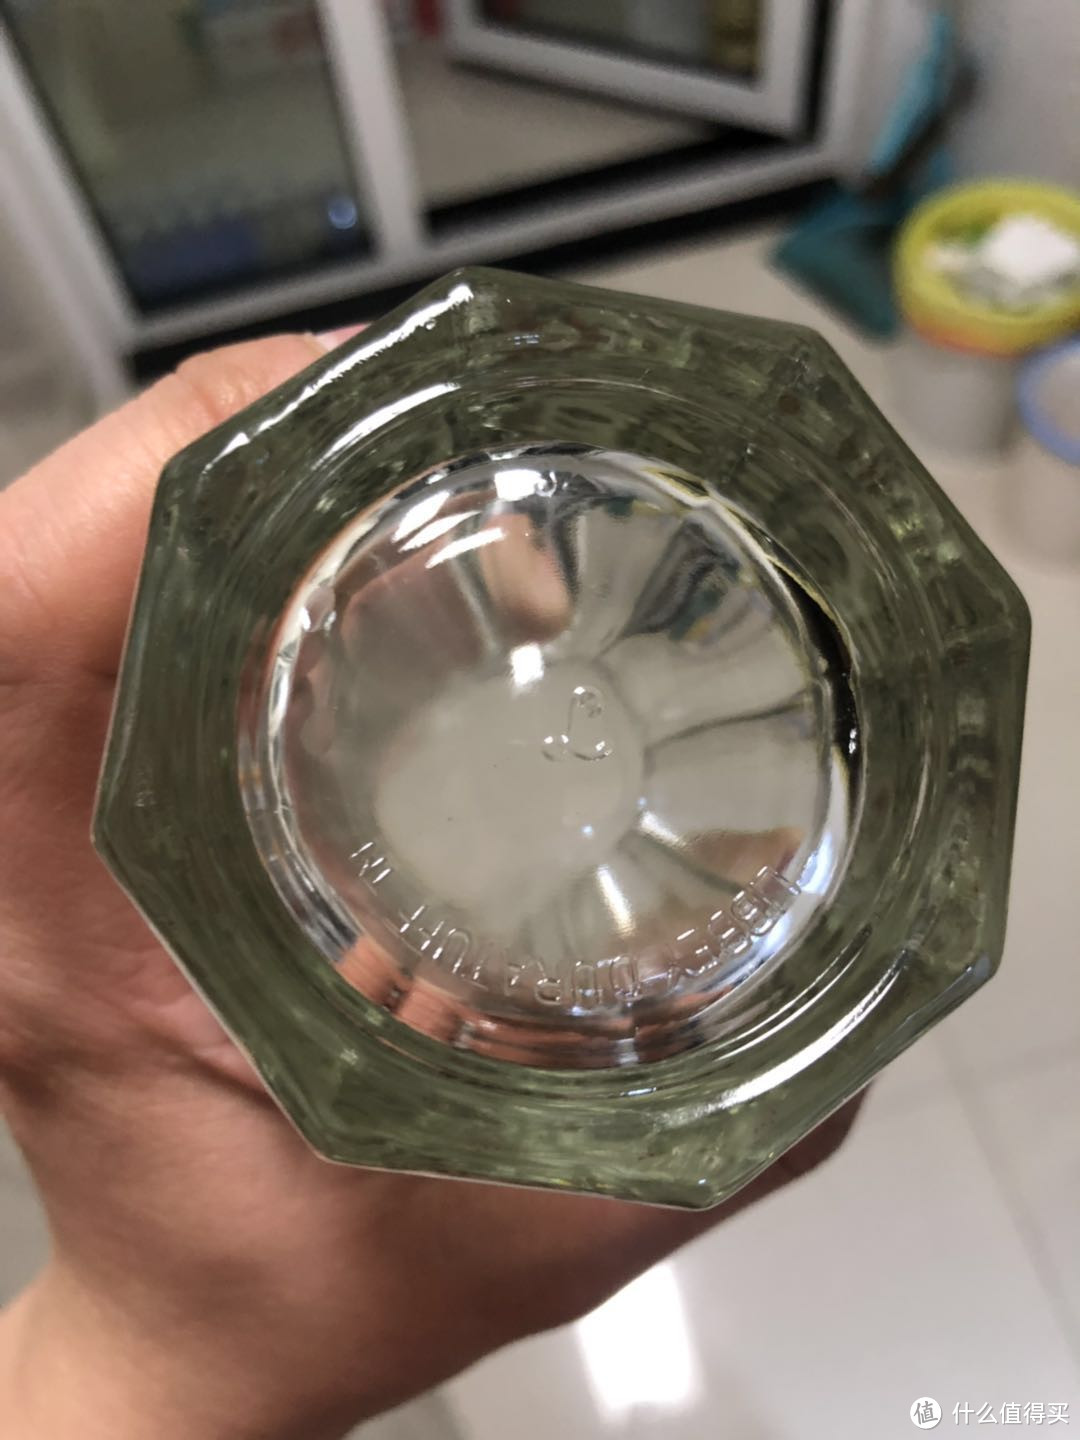 中间是利比公司的logo，这个公司据说是世界上第二大玻璃器皿生产制造商